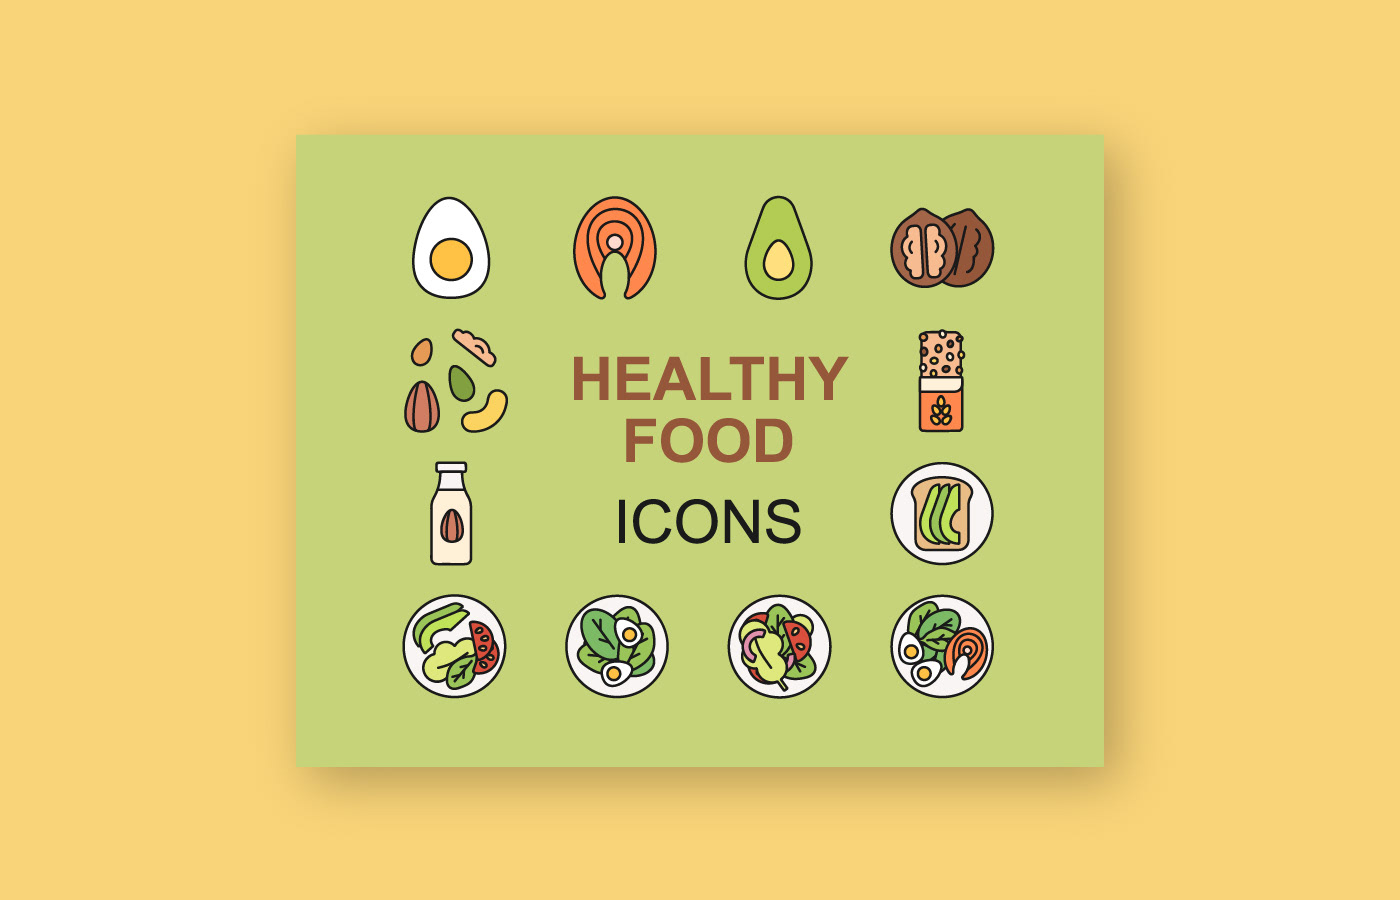 design Food  Health healthy healthy food Icon icon design  icons Illustrator vector